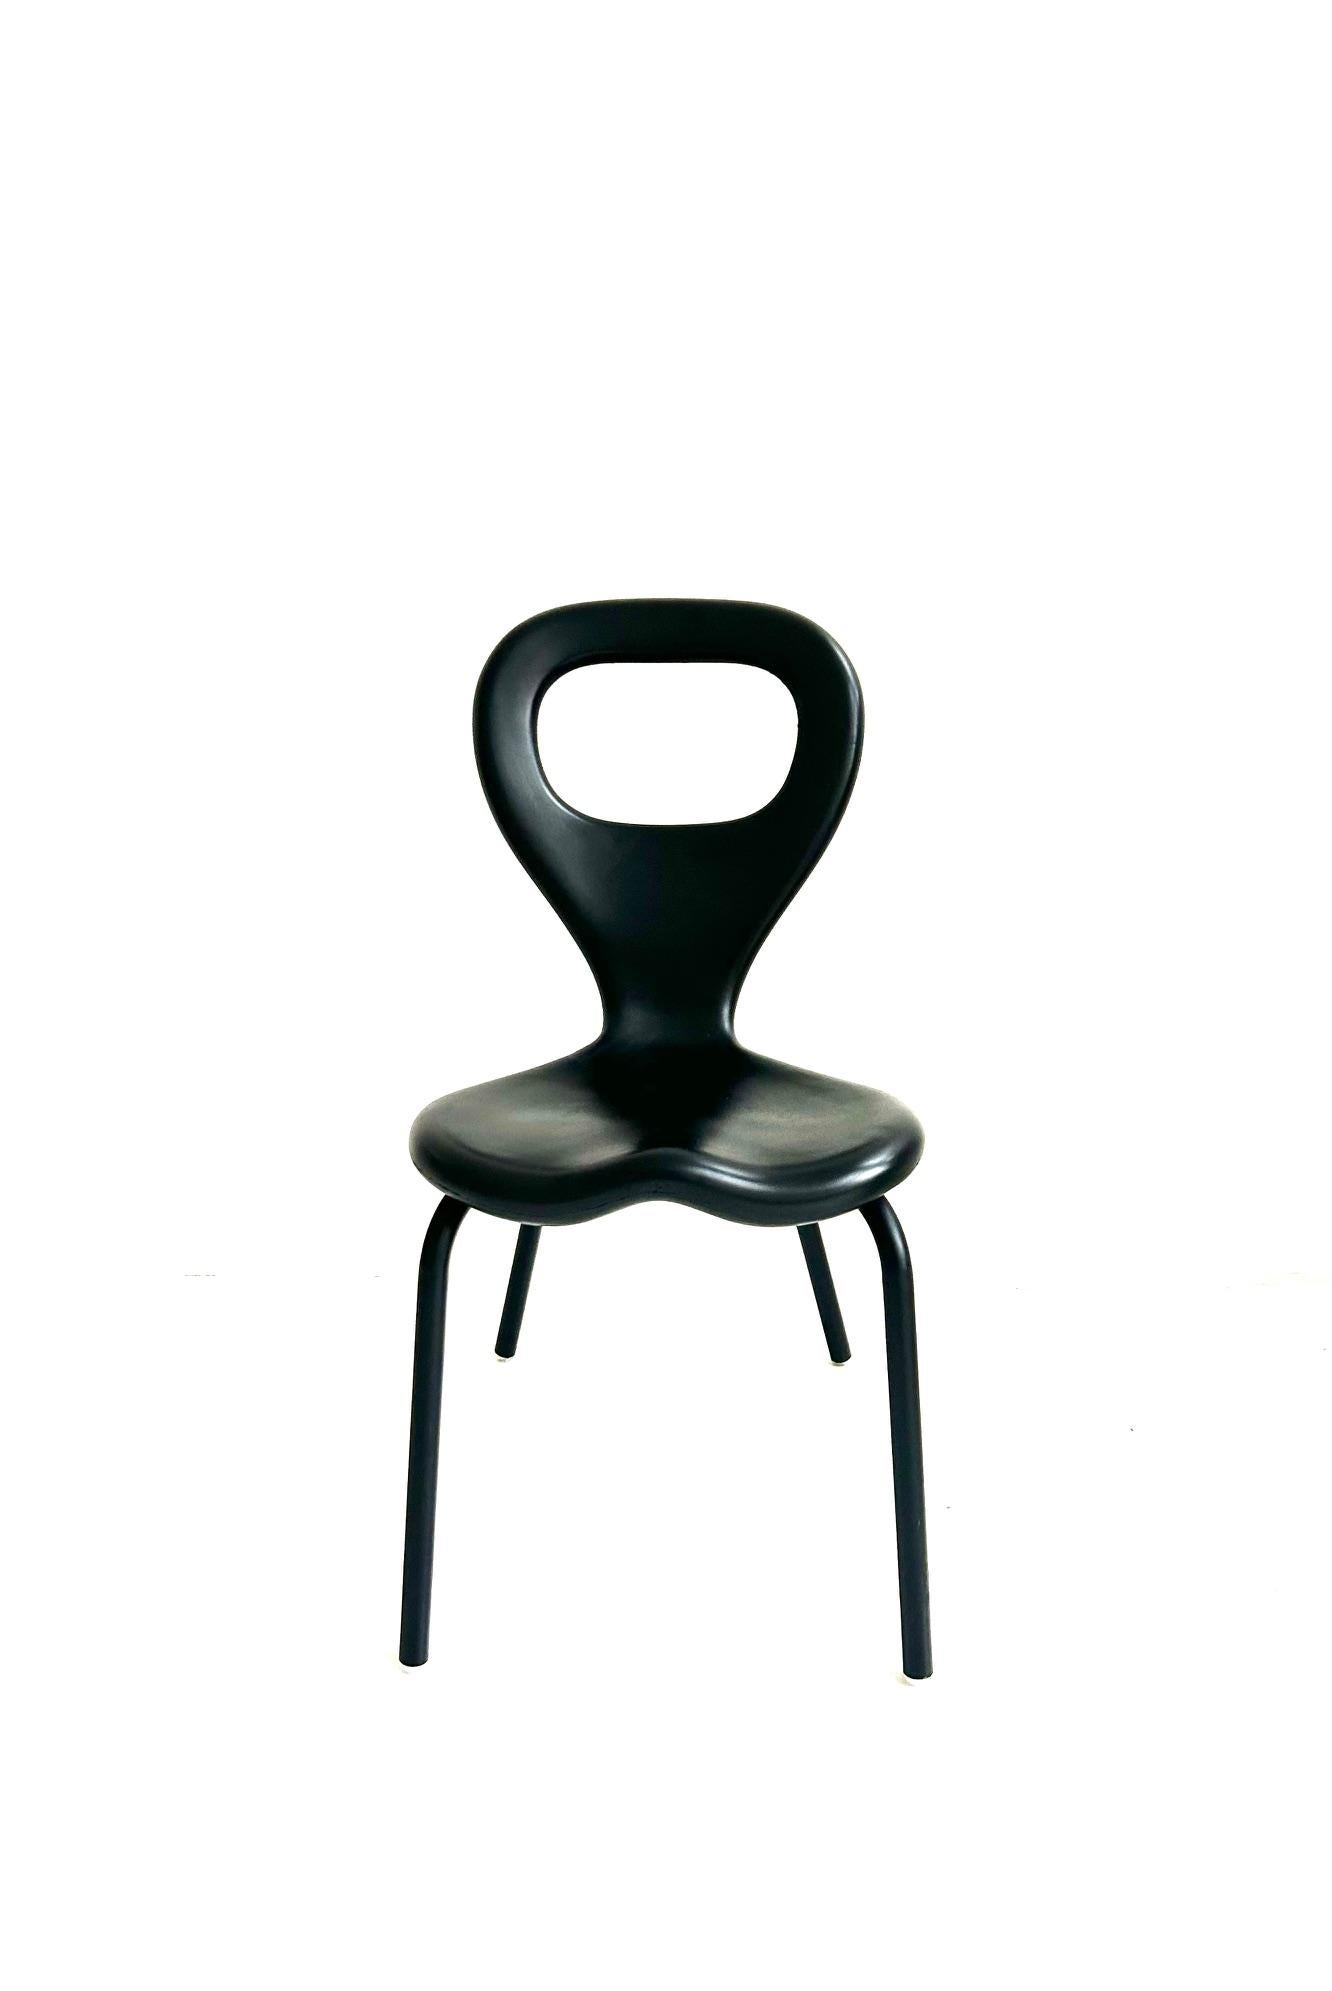 Ensemble de 2 chaises télévisées de Marc Newson, Moroso, 1993

Tube d'acier peint, mousse de polyuréthane moulée par injection auto-épaississante

2 chaises empilables, la forme est une extrapolation de la forme Orgone avec un trou dans le dos.  
Le